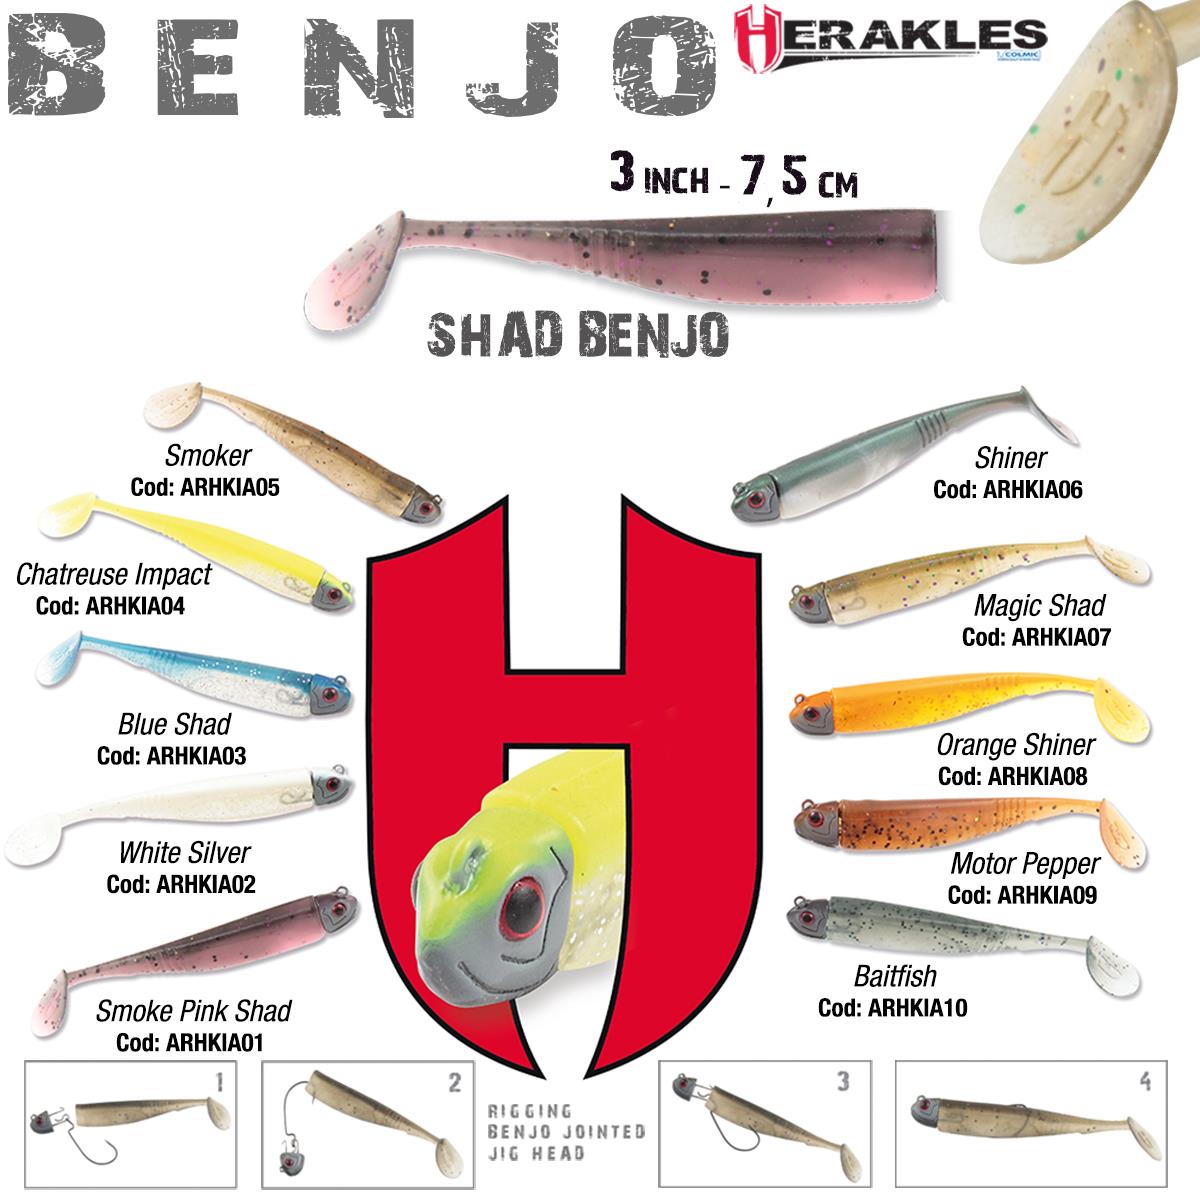 SHAD BENJO 3 7.5cm WHITE SILVER